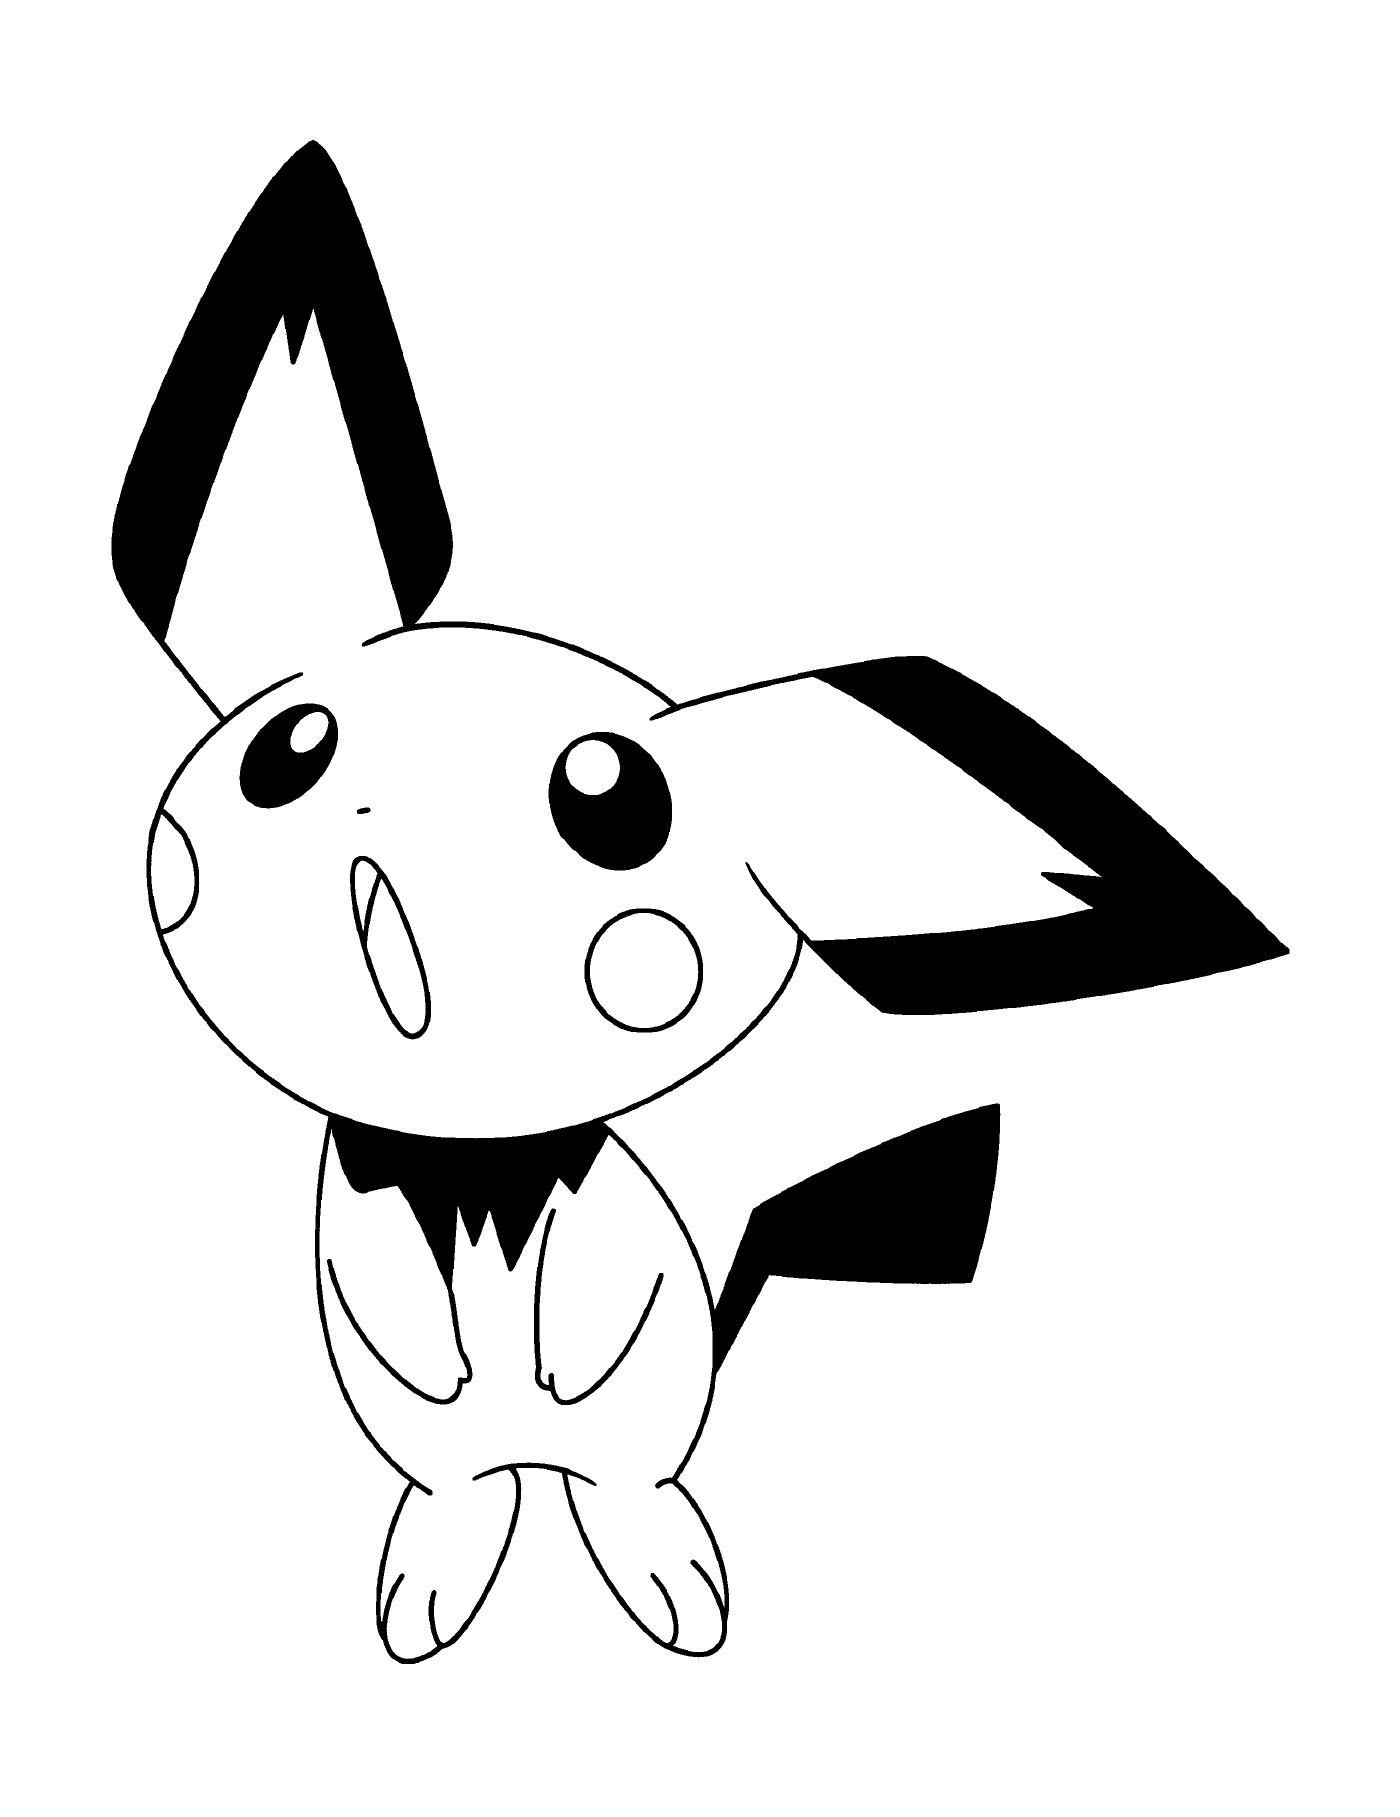  A small animal resembling Pikachu 